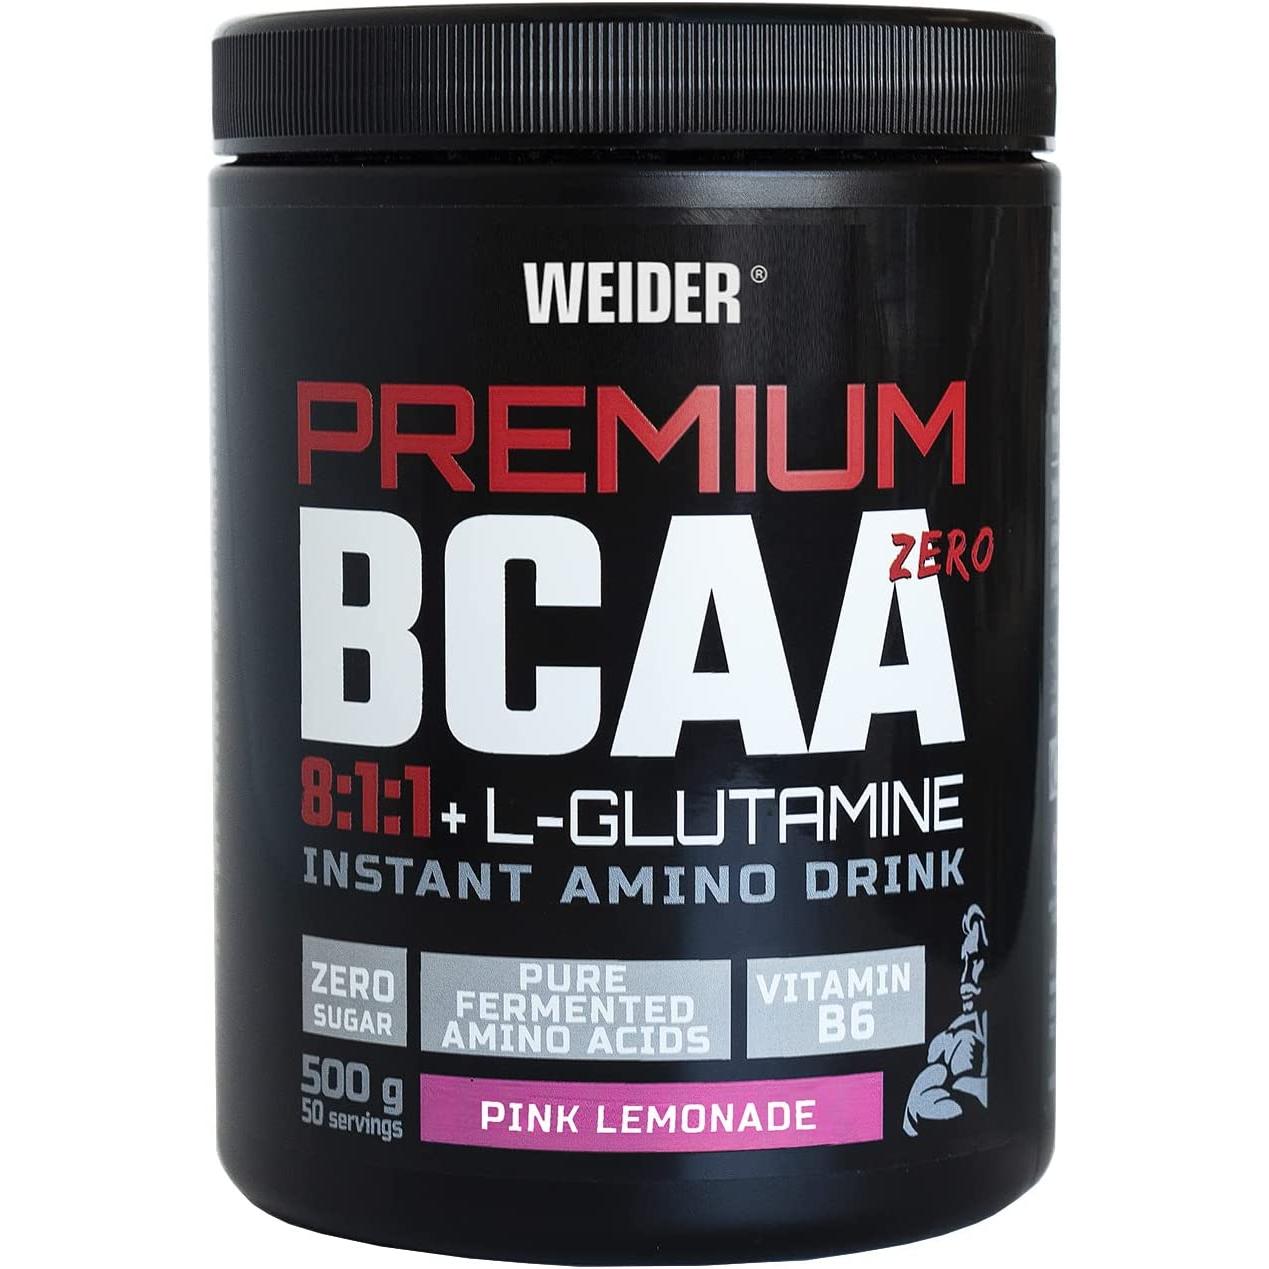 Weider - Premium BCAA 8:1:1+L-Glutamina 500gr Weider con Vitamina B6. Sin azúcar, sin lactosa, sin colorantes artificiales. Vegan